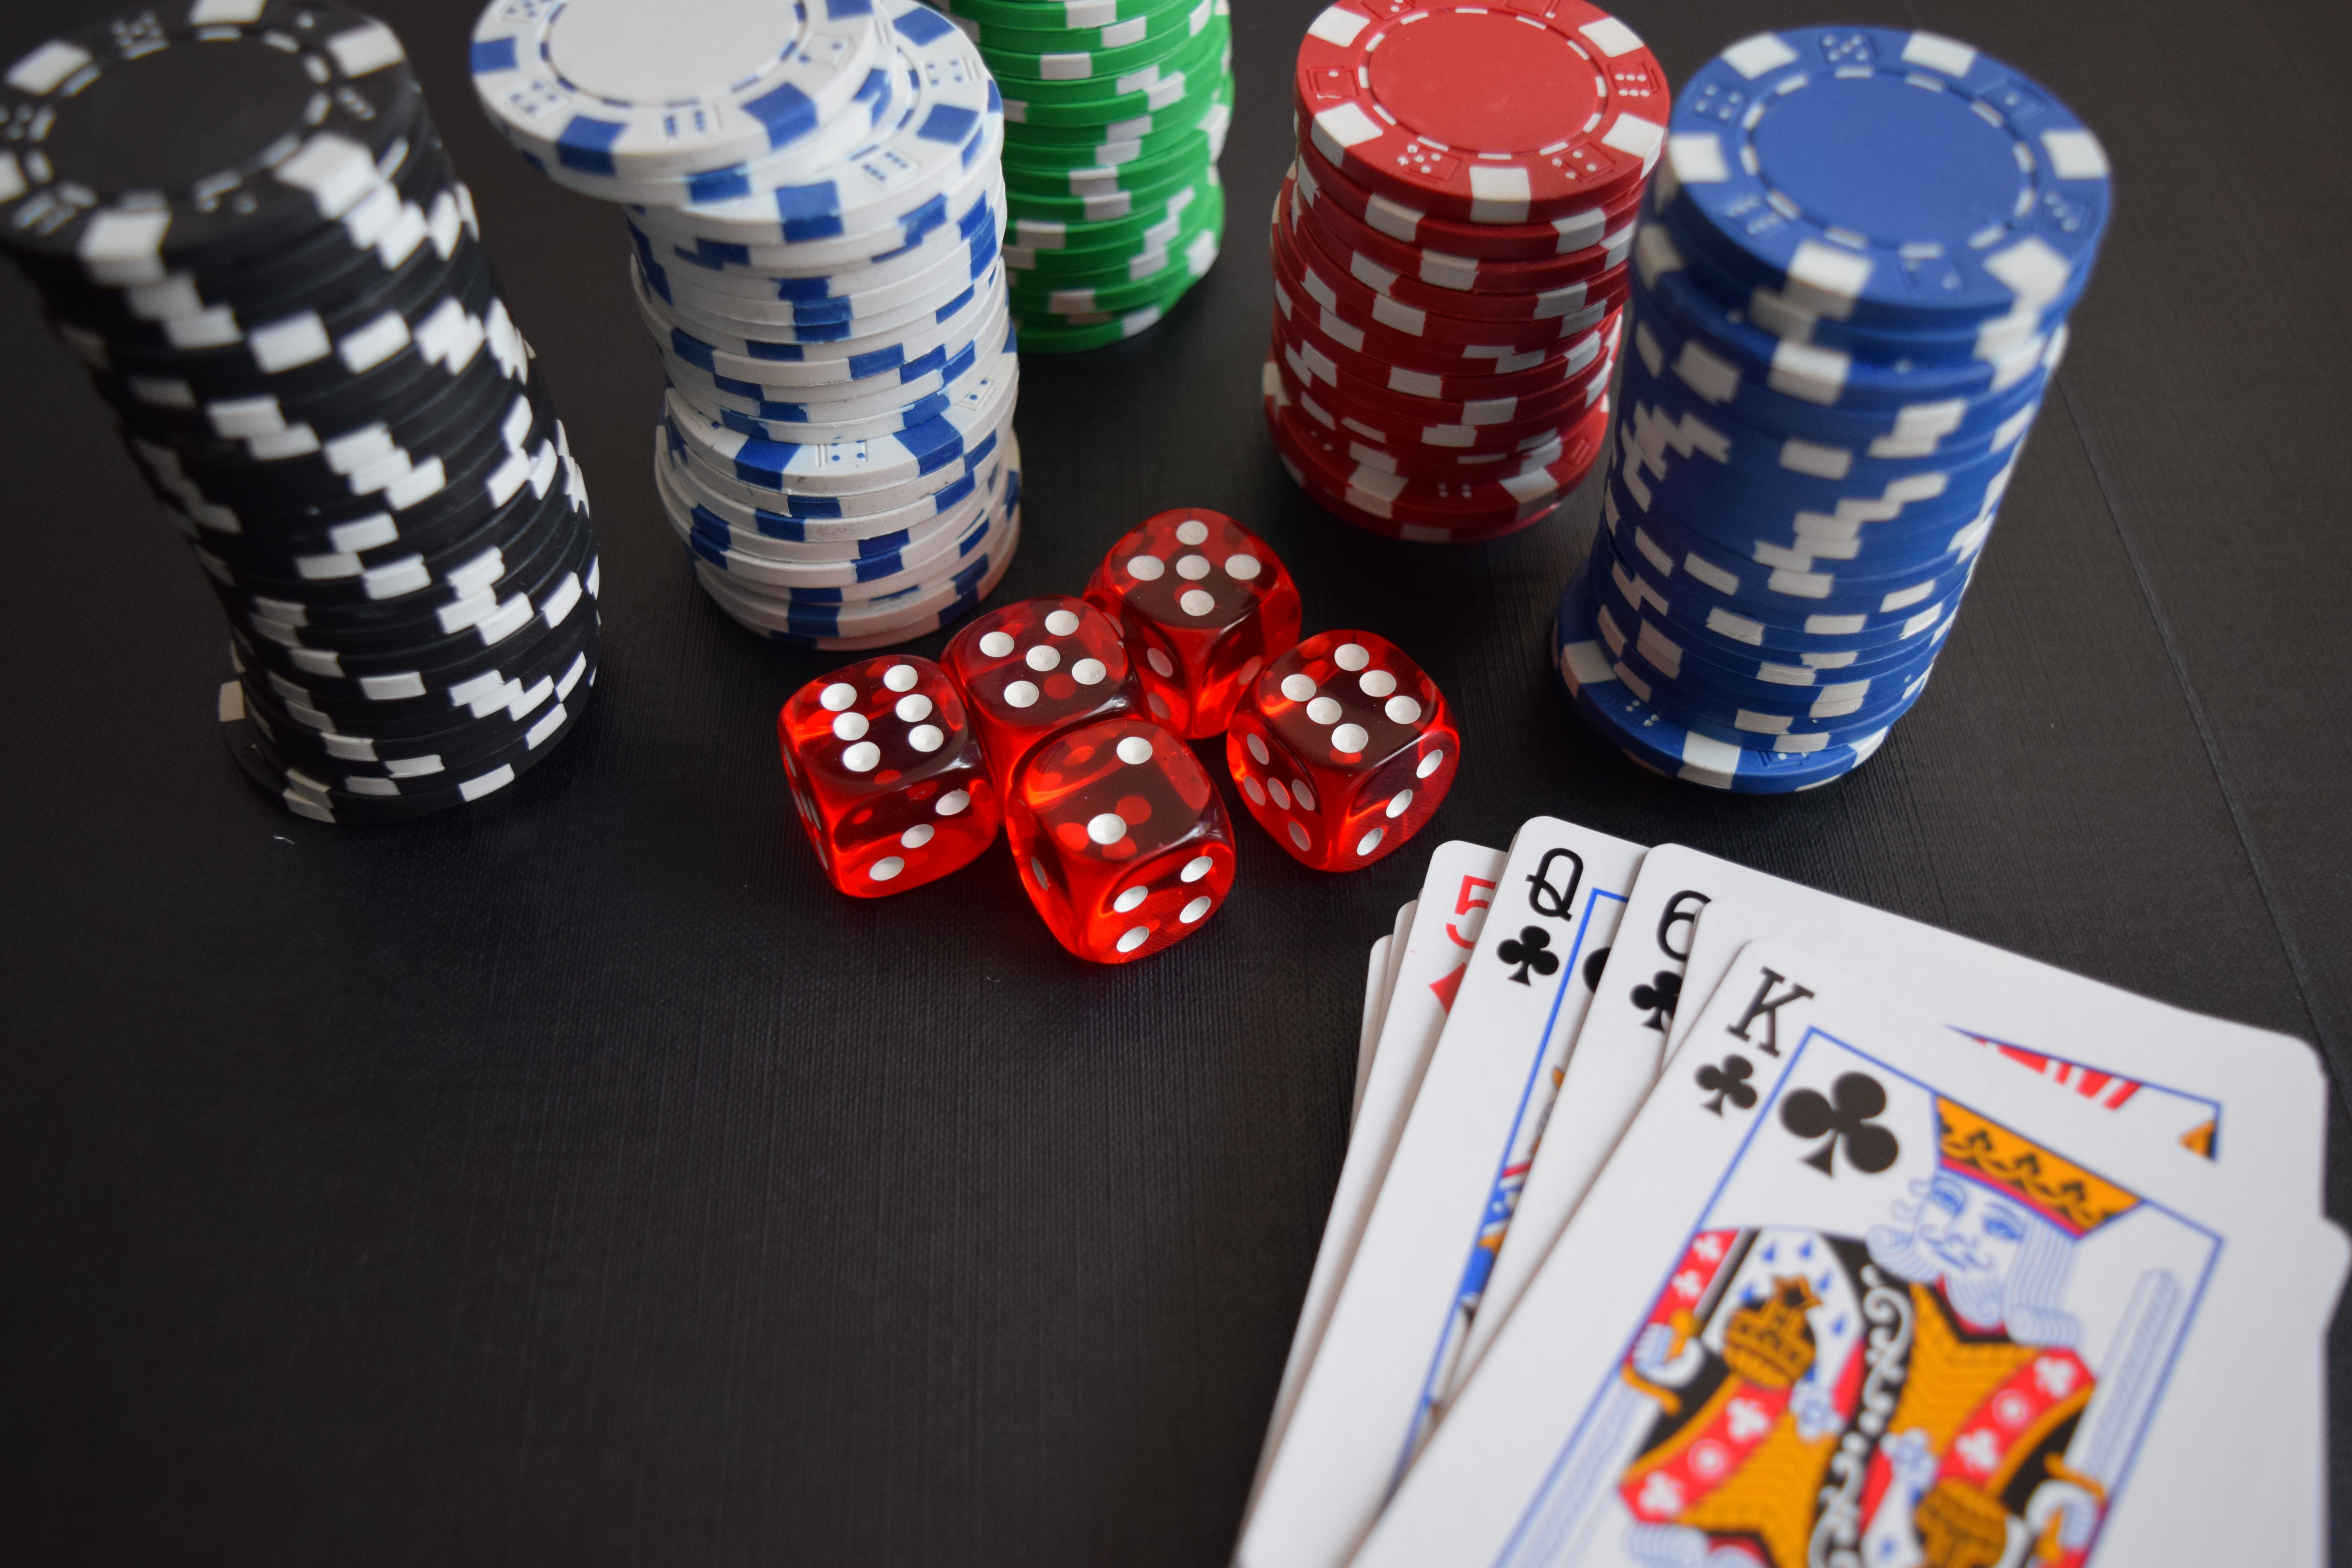 2. Một số mẹo đánh cờ bạc online cho người mới bắt đầu